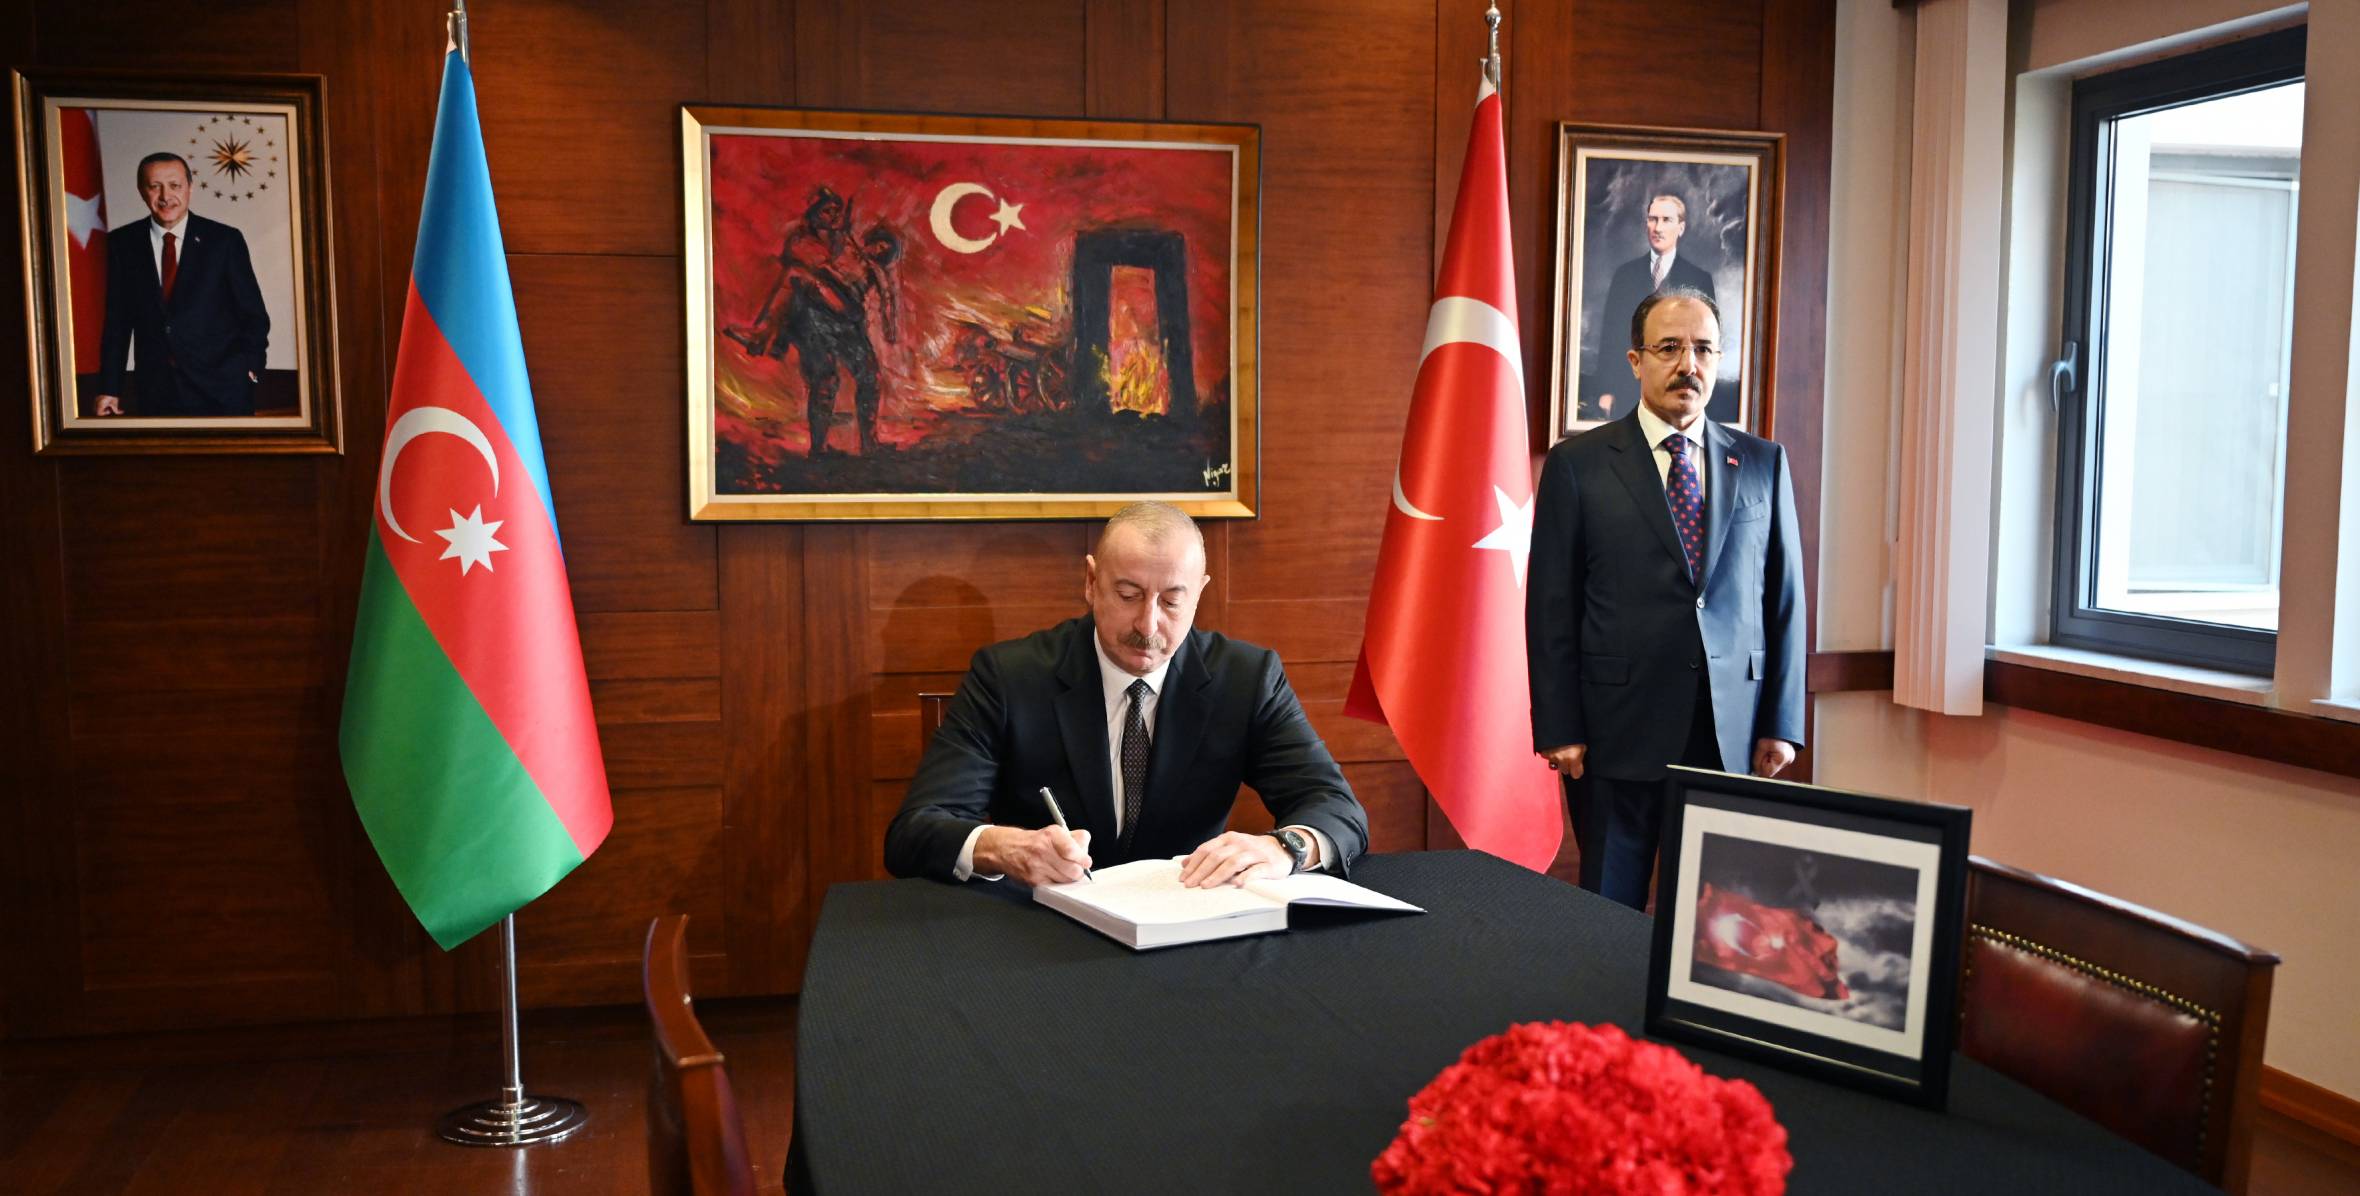 Ильхам Алиев посетил посольство Турции в Азербайджане, выразил соболезнования в связи с многочисленными человеческими жертвами